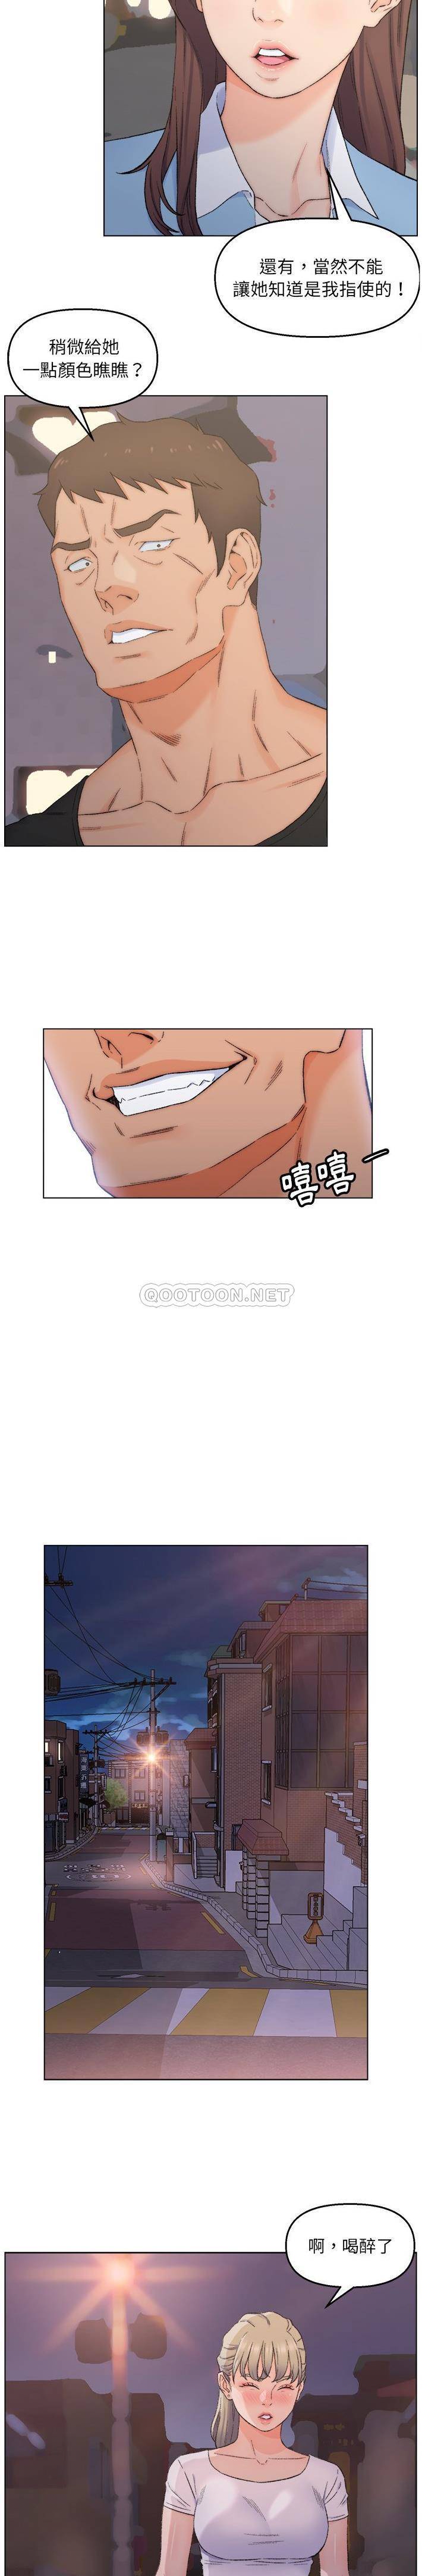 韩国污漫画 父親的壞朋友 第3话 16